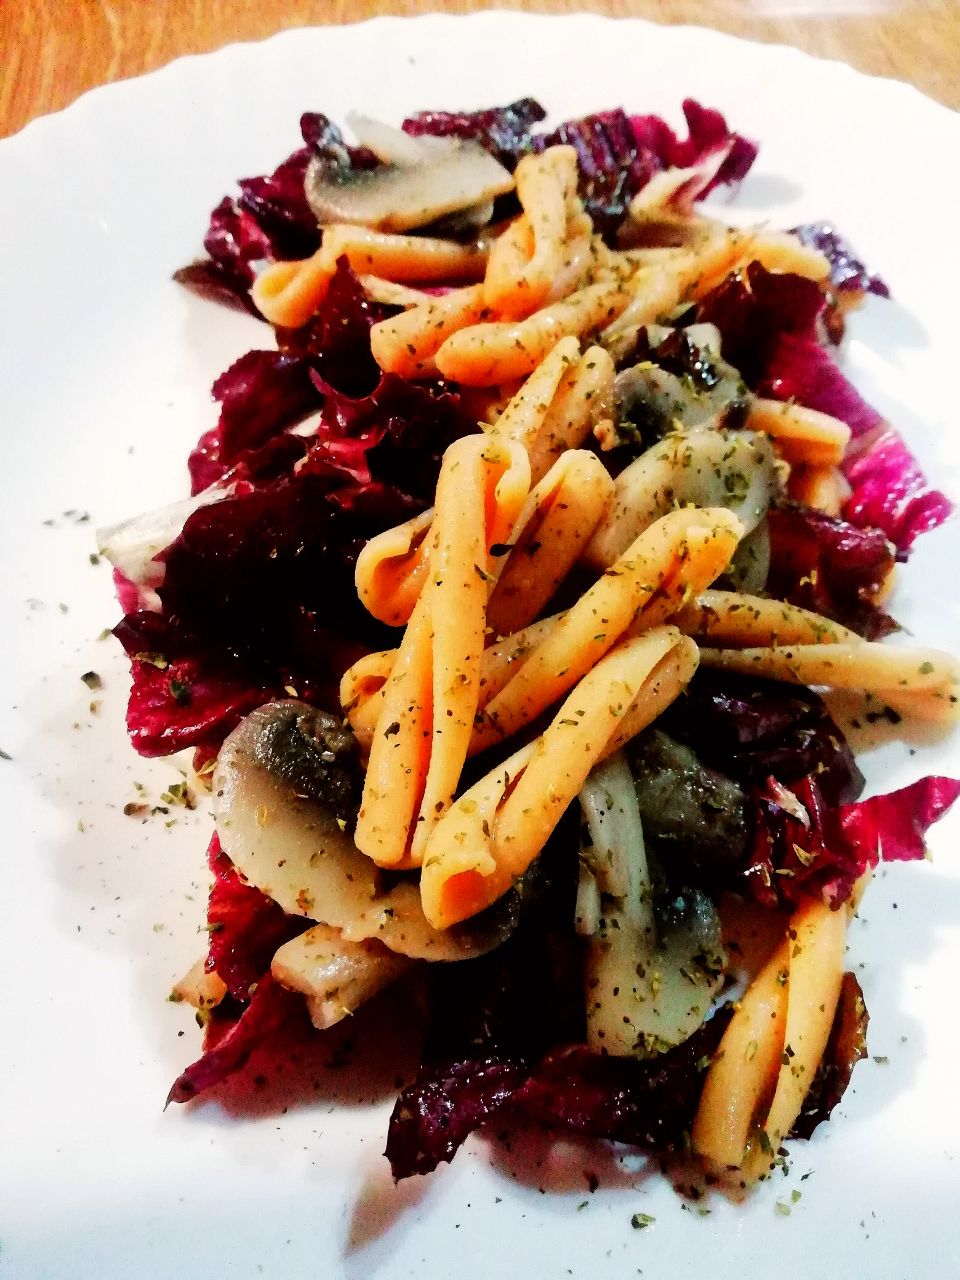 Primi piatti vegetariani senza glutine: pasta di ceci con funghi champignon e radicchio rosso!